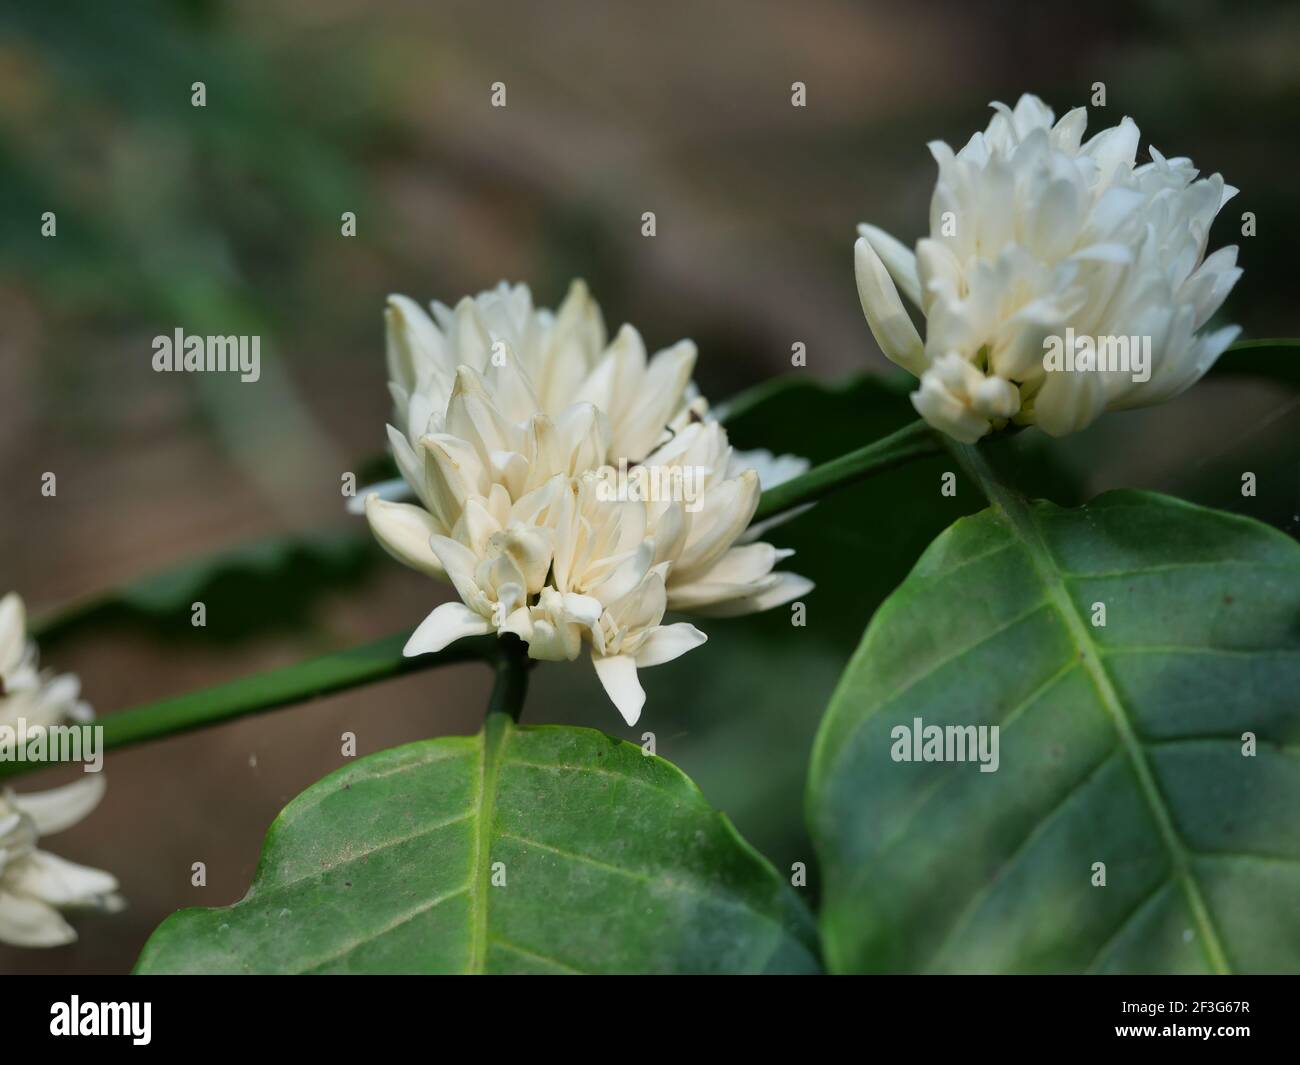 Robusta Kaffeeblüte auf Baumpflanze mit grünem Blatt mit schwarzer Farbe im Hintergrund. Blütenblätter und weiße Staubgefäße von blühenden Blumen Stockfoto